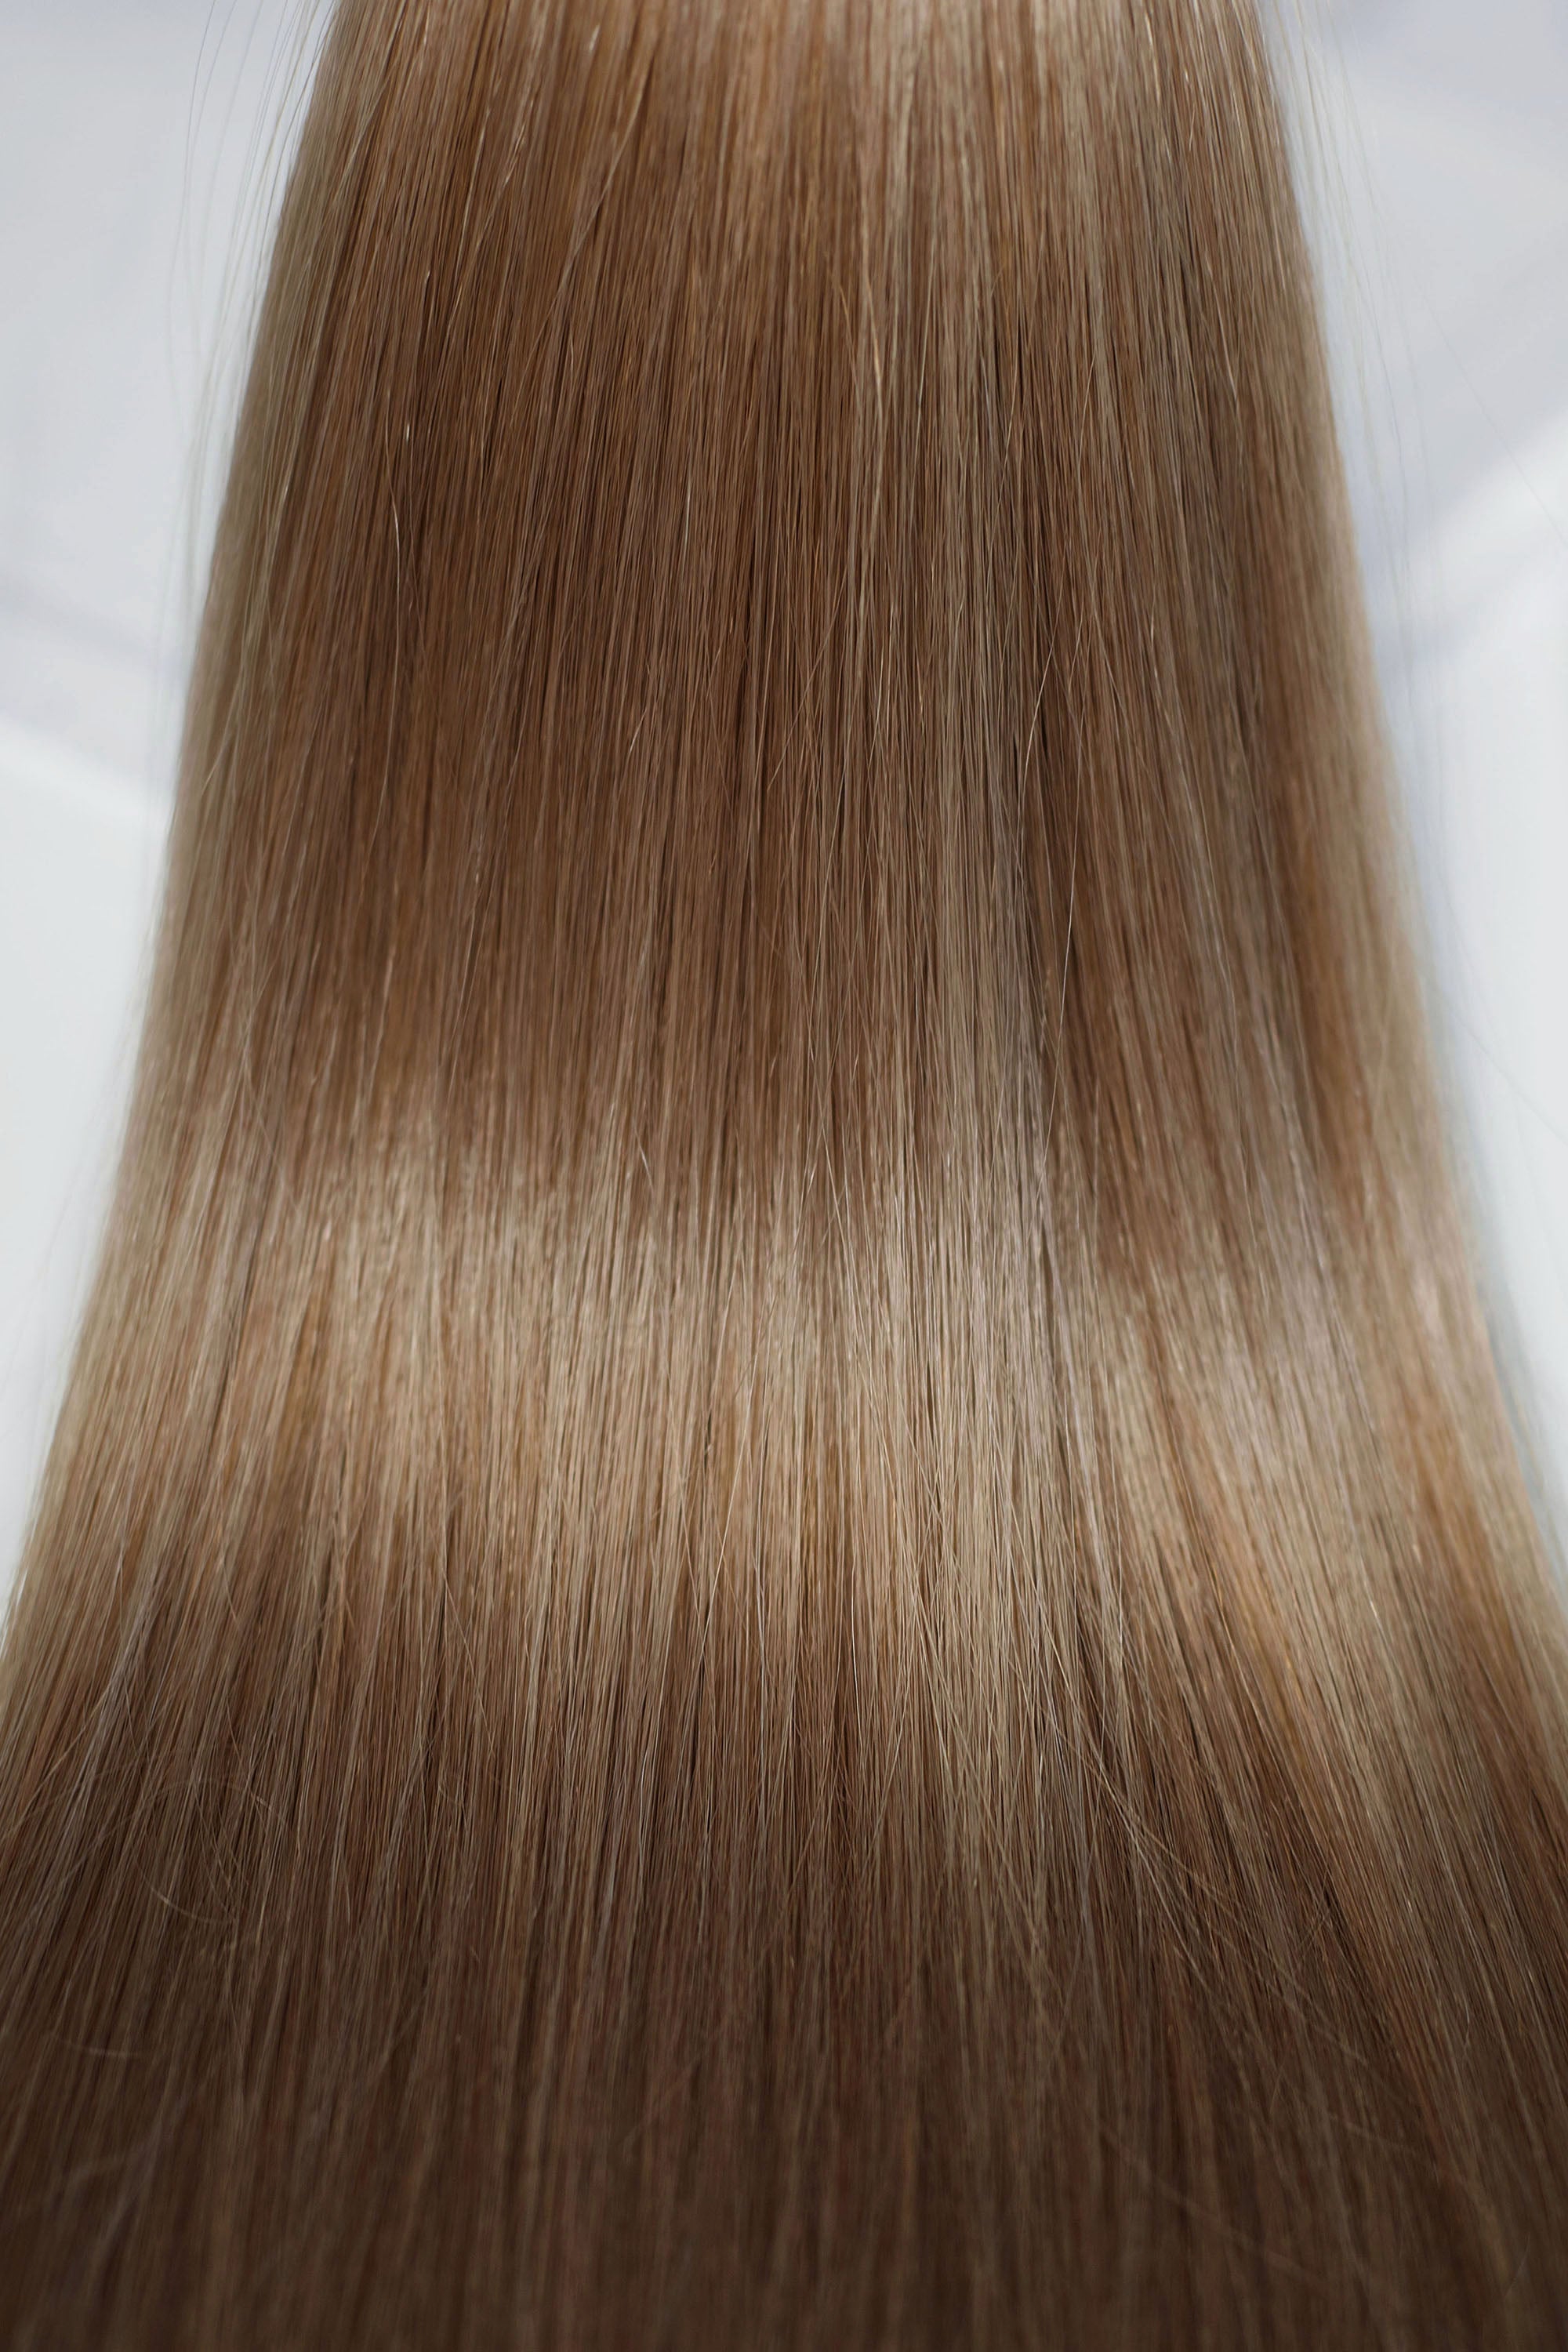 Behair professional Bulk hair "Premium" 24" (60cm) Natural Straight Light Ash Brown #10 - 25g hair extensions